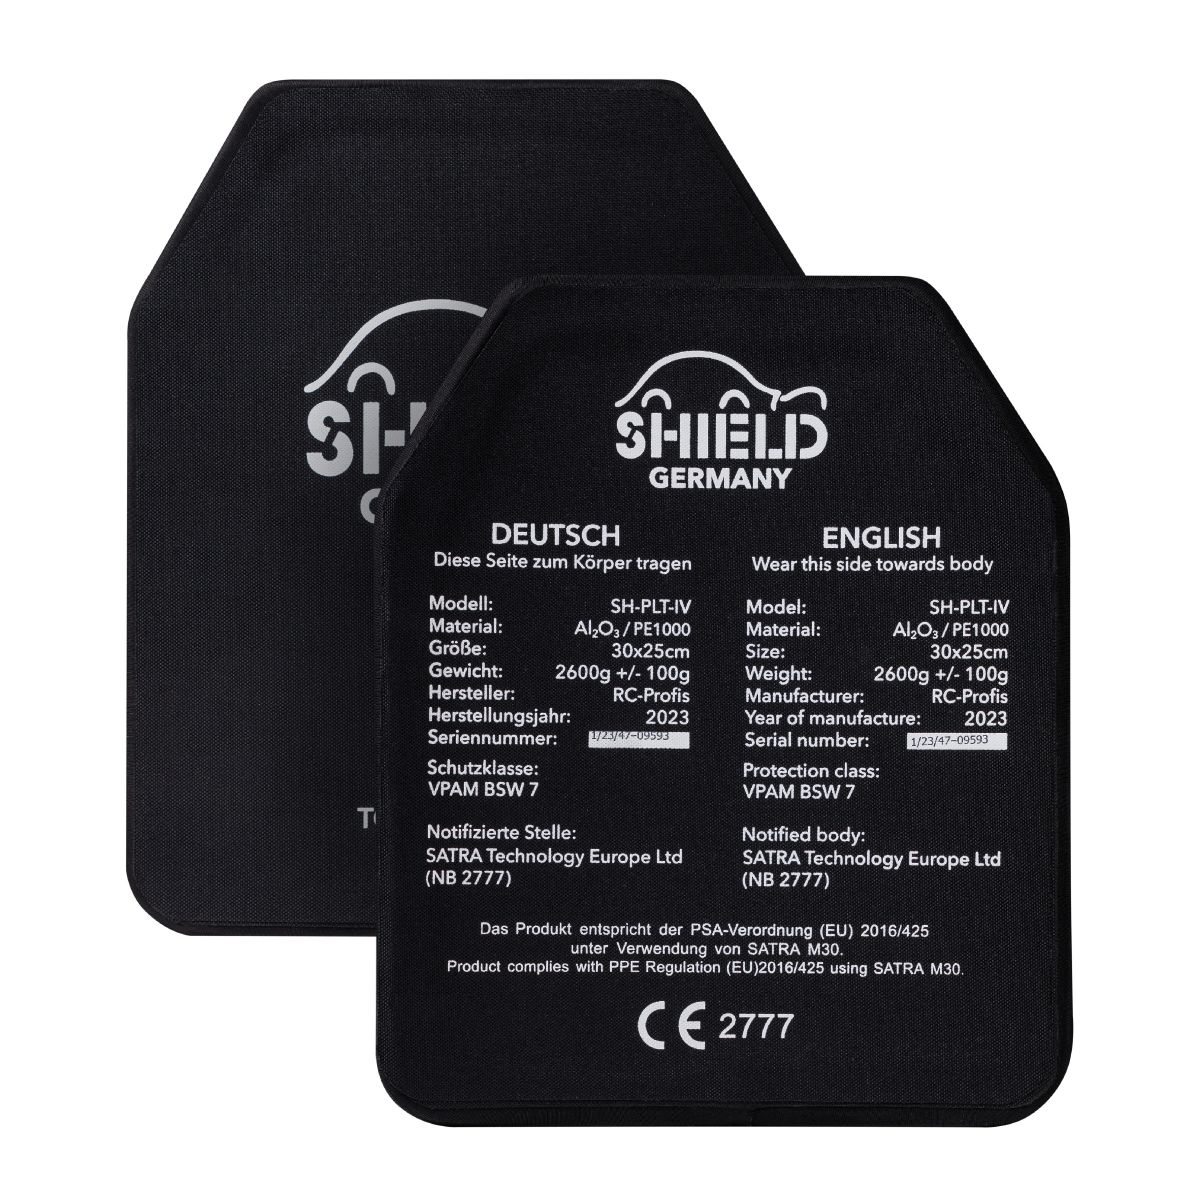 Керамічні плити 6 класу Shield Germany® SK4. Вага 2.65 кг. 25х30 см.